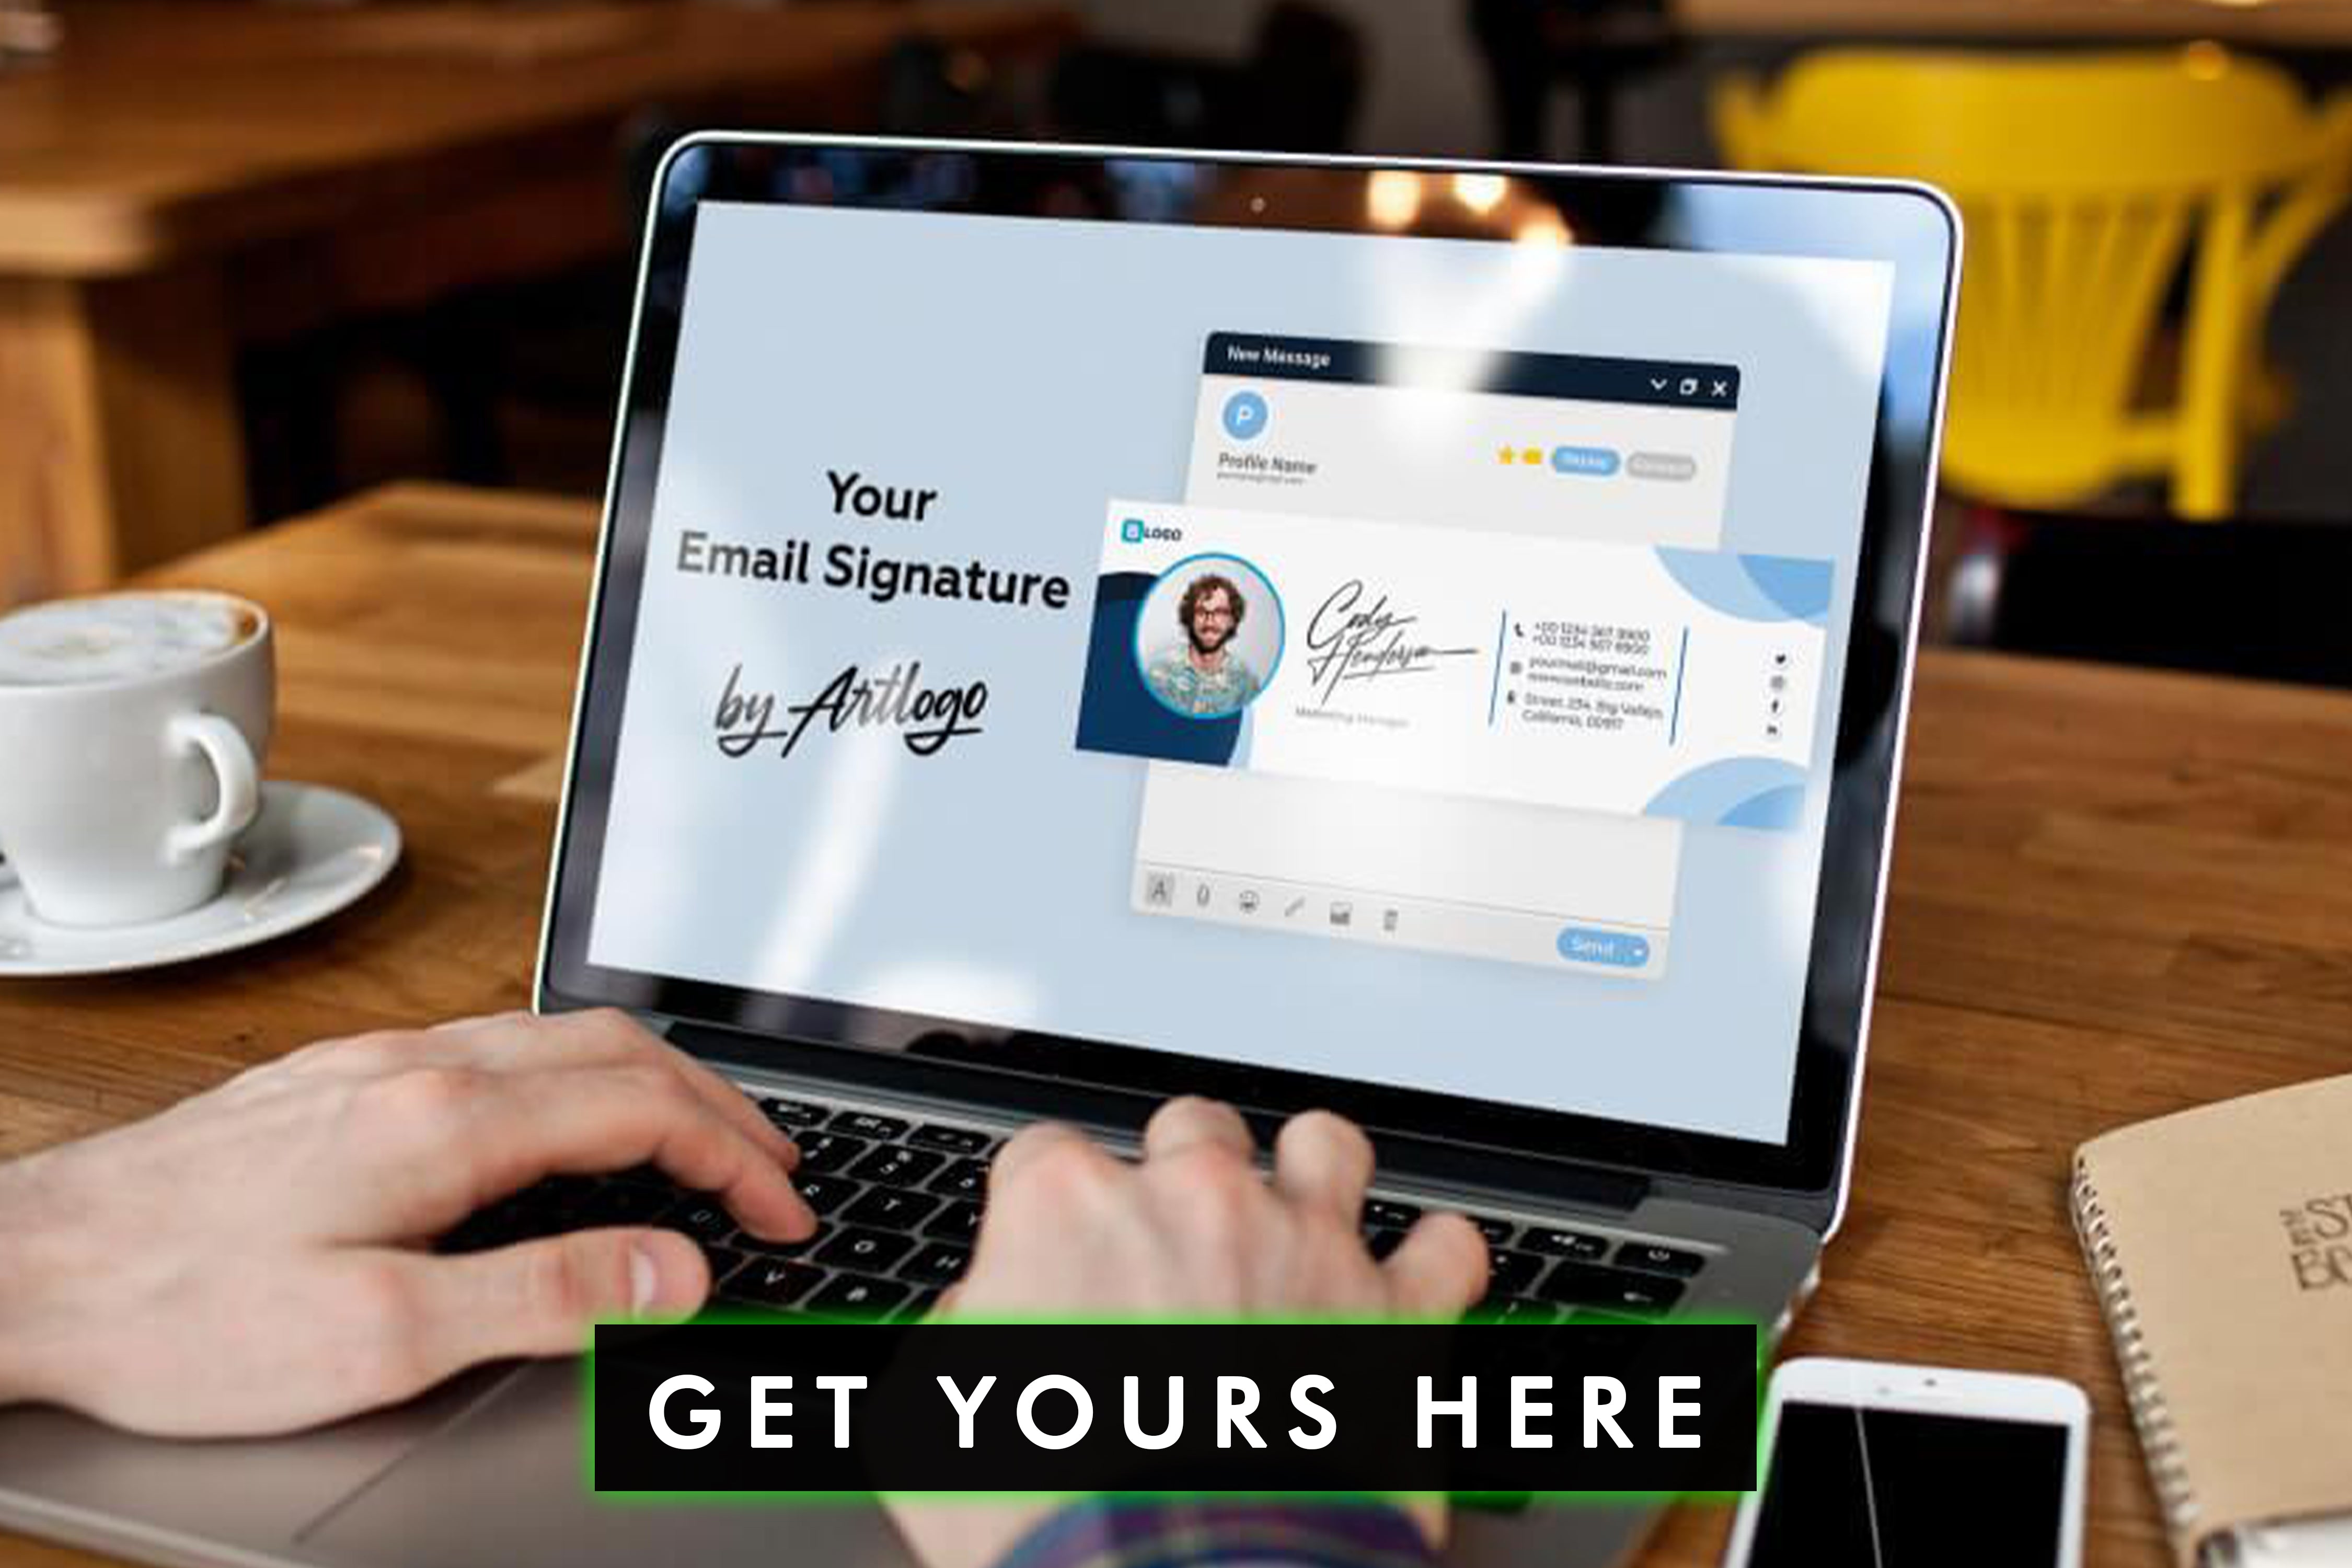 Wzmocnij wizerunek swojej marki i zapewnij spójność dzięki ustandaryzowanemu firmowemu podpisowi e-mail, który reprezentuje wartości i tożsamość Twojej marki.